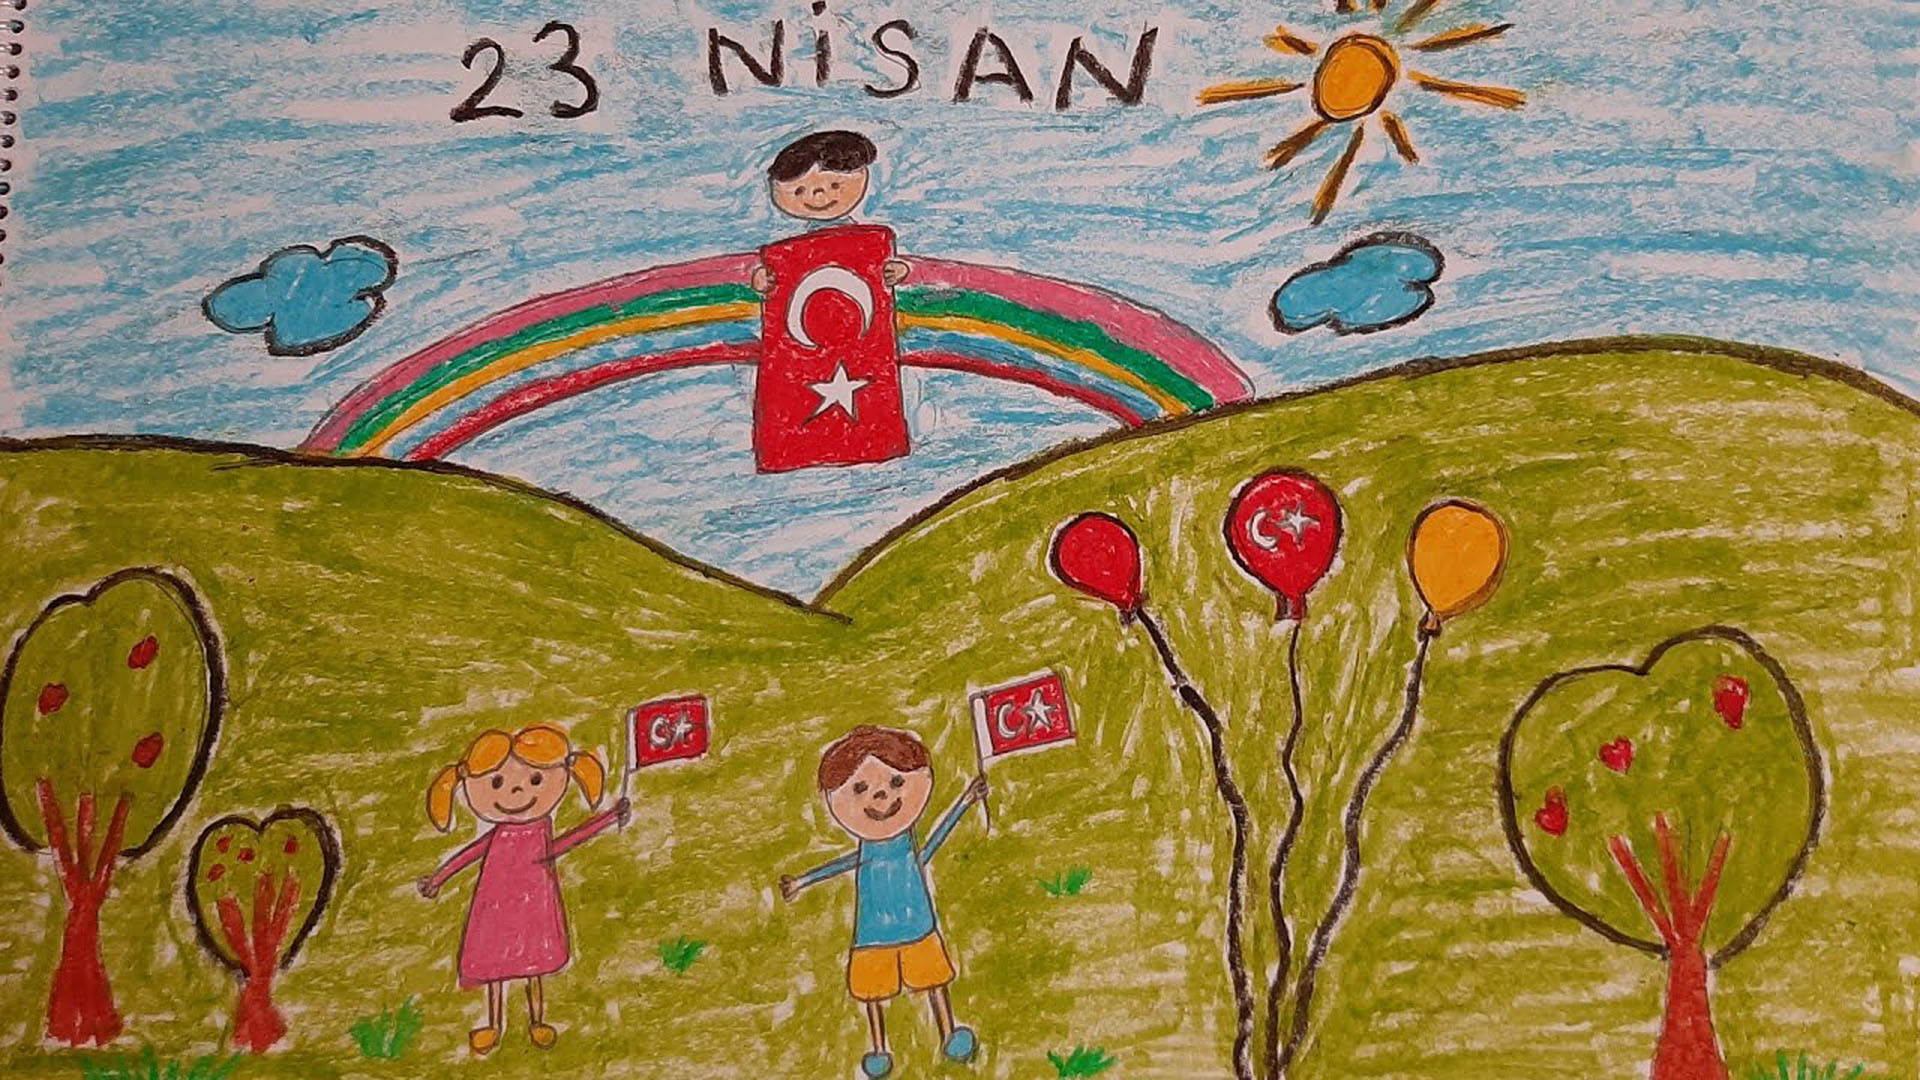 23 Nisan mesajları 2022 resimli, kısa, anlamlı, uzun | 23 Nisan Ulusal Egemenlik ve Çocuk Bayramı mesajları